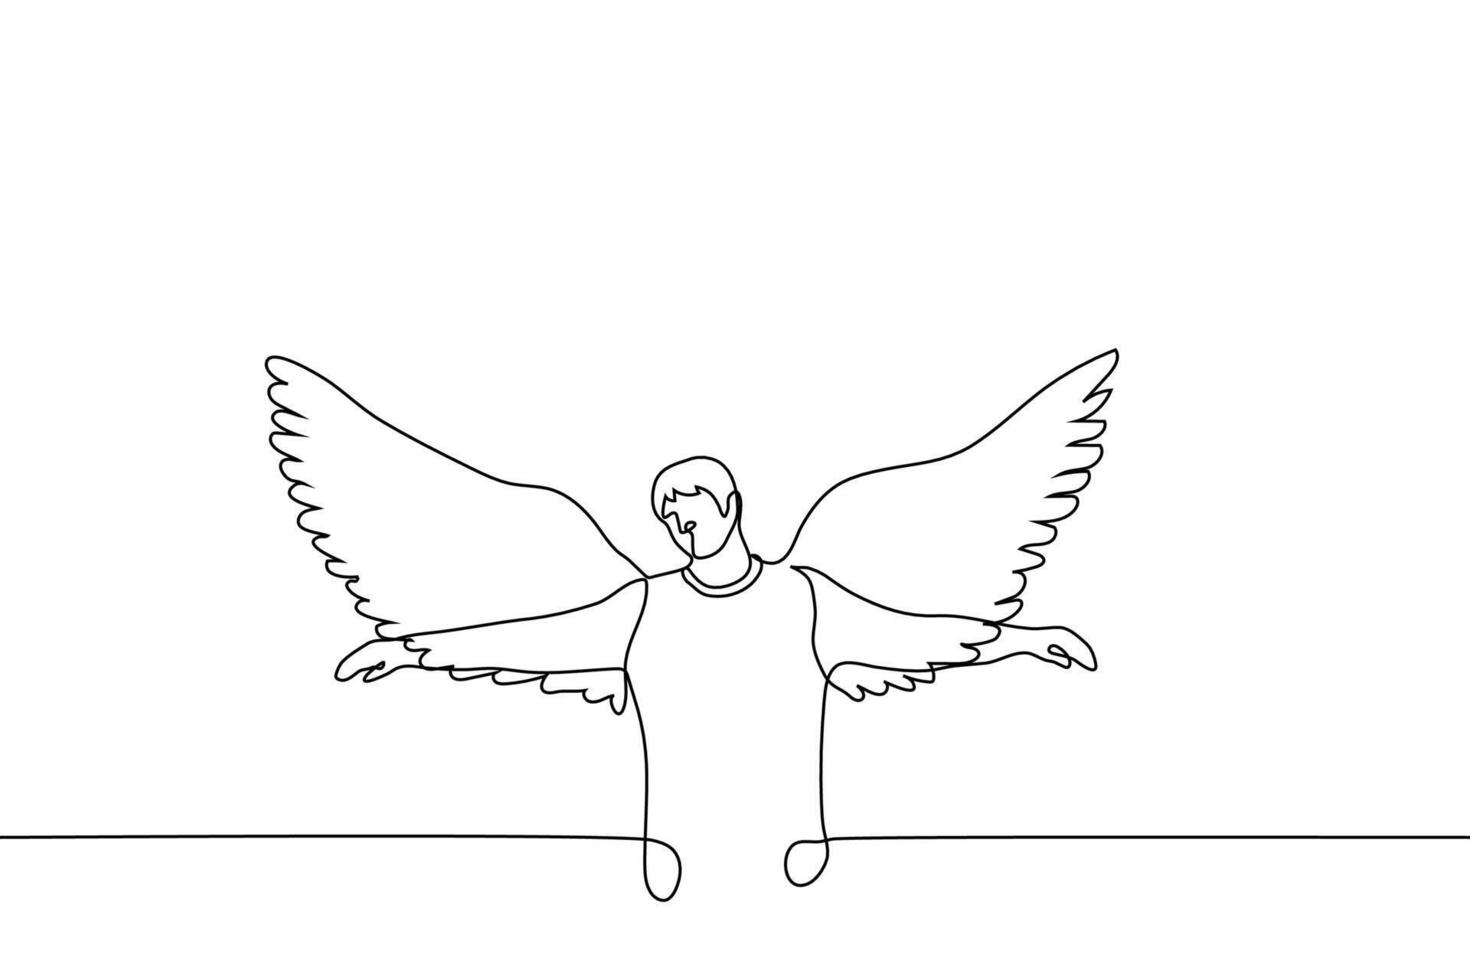 Mann mit Flügel ist Stehen mit seine Flügel Verbreitung und seine Waffen zu das Seiten - - einer Linie Zeichnung Vektor. Engel Konzept Metapher von verträumt Person, kostenlos Denken Person vektor